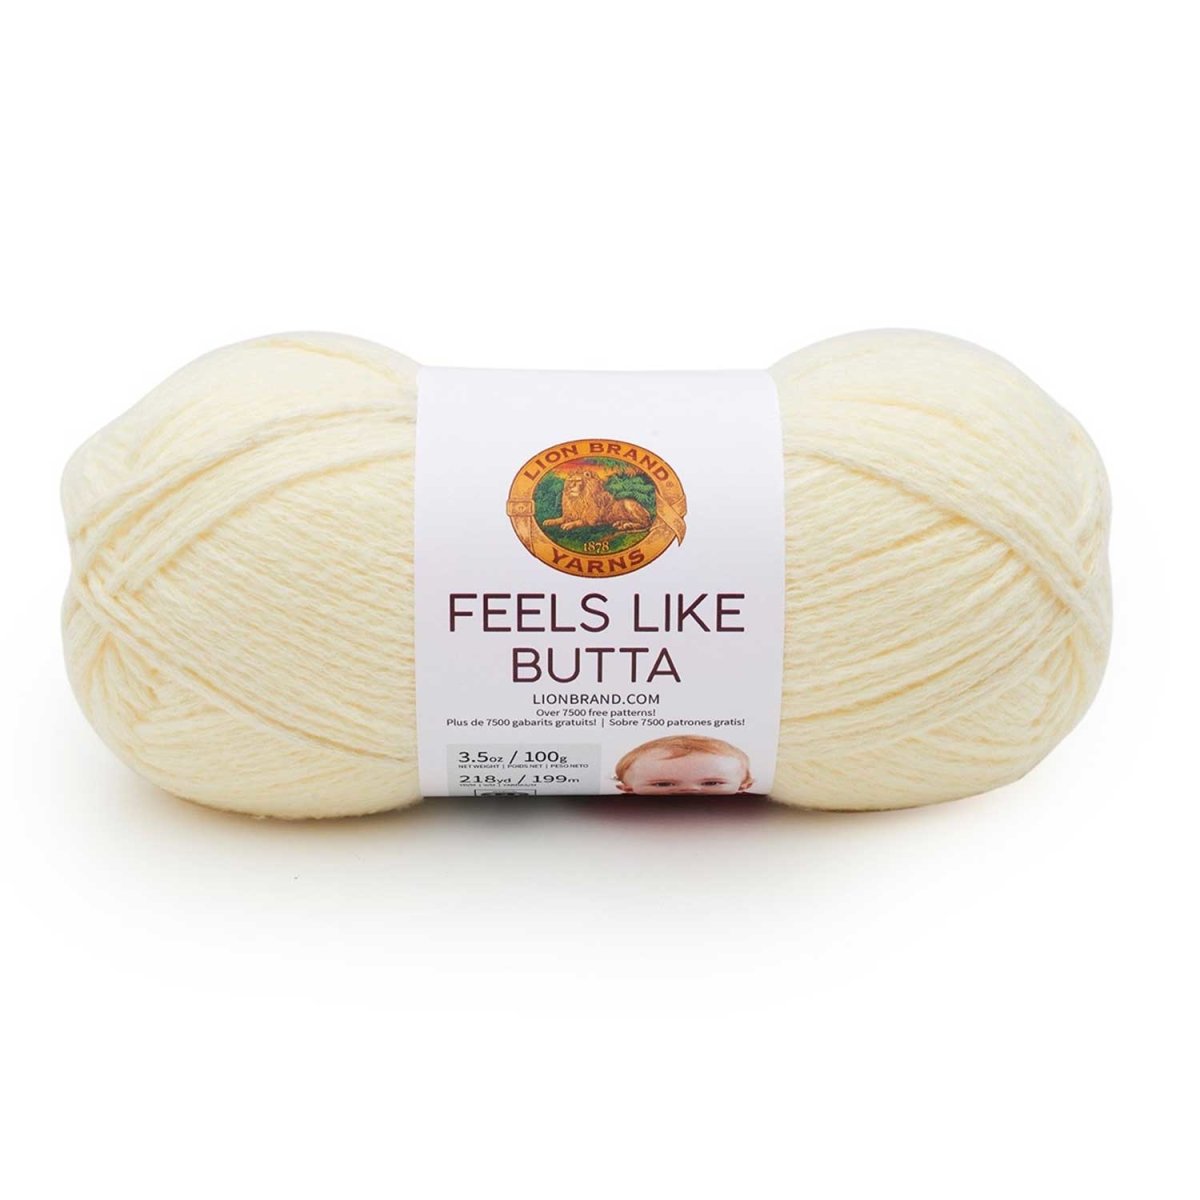 FEELS LIKE BUTTA - Crochetstores215-158